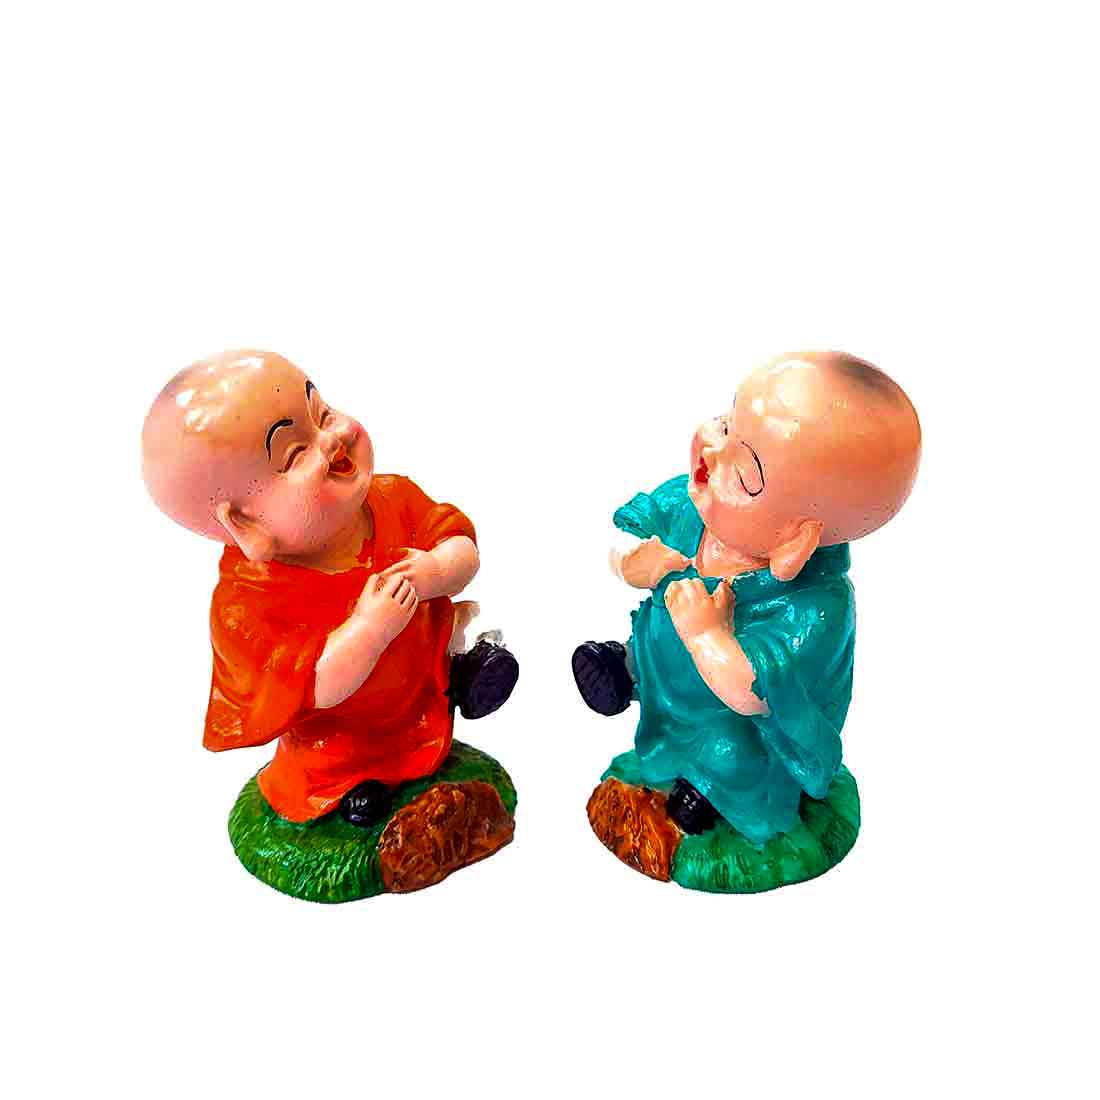 Baby Monk Showpiece - for Car Dashboard - 3 Inch - Set of 2 - ApkaMart